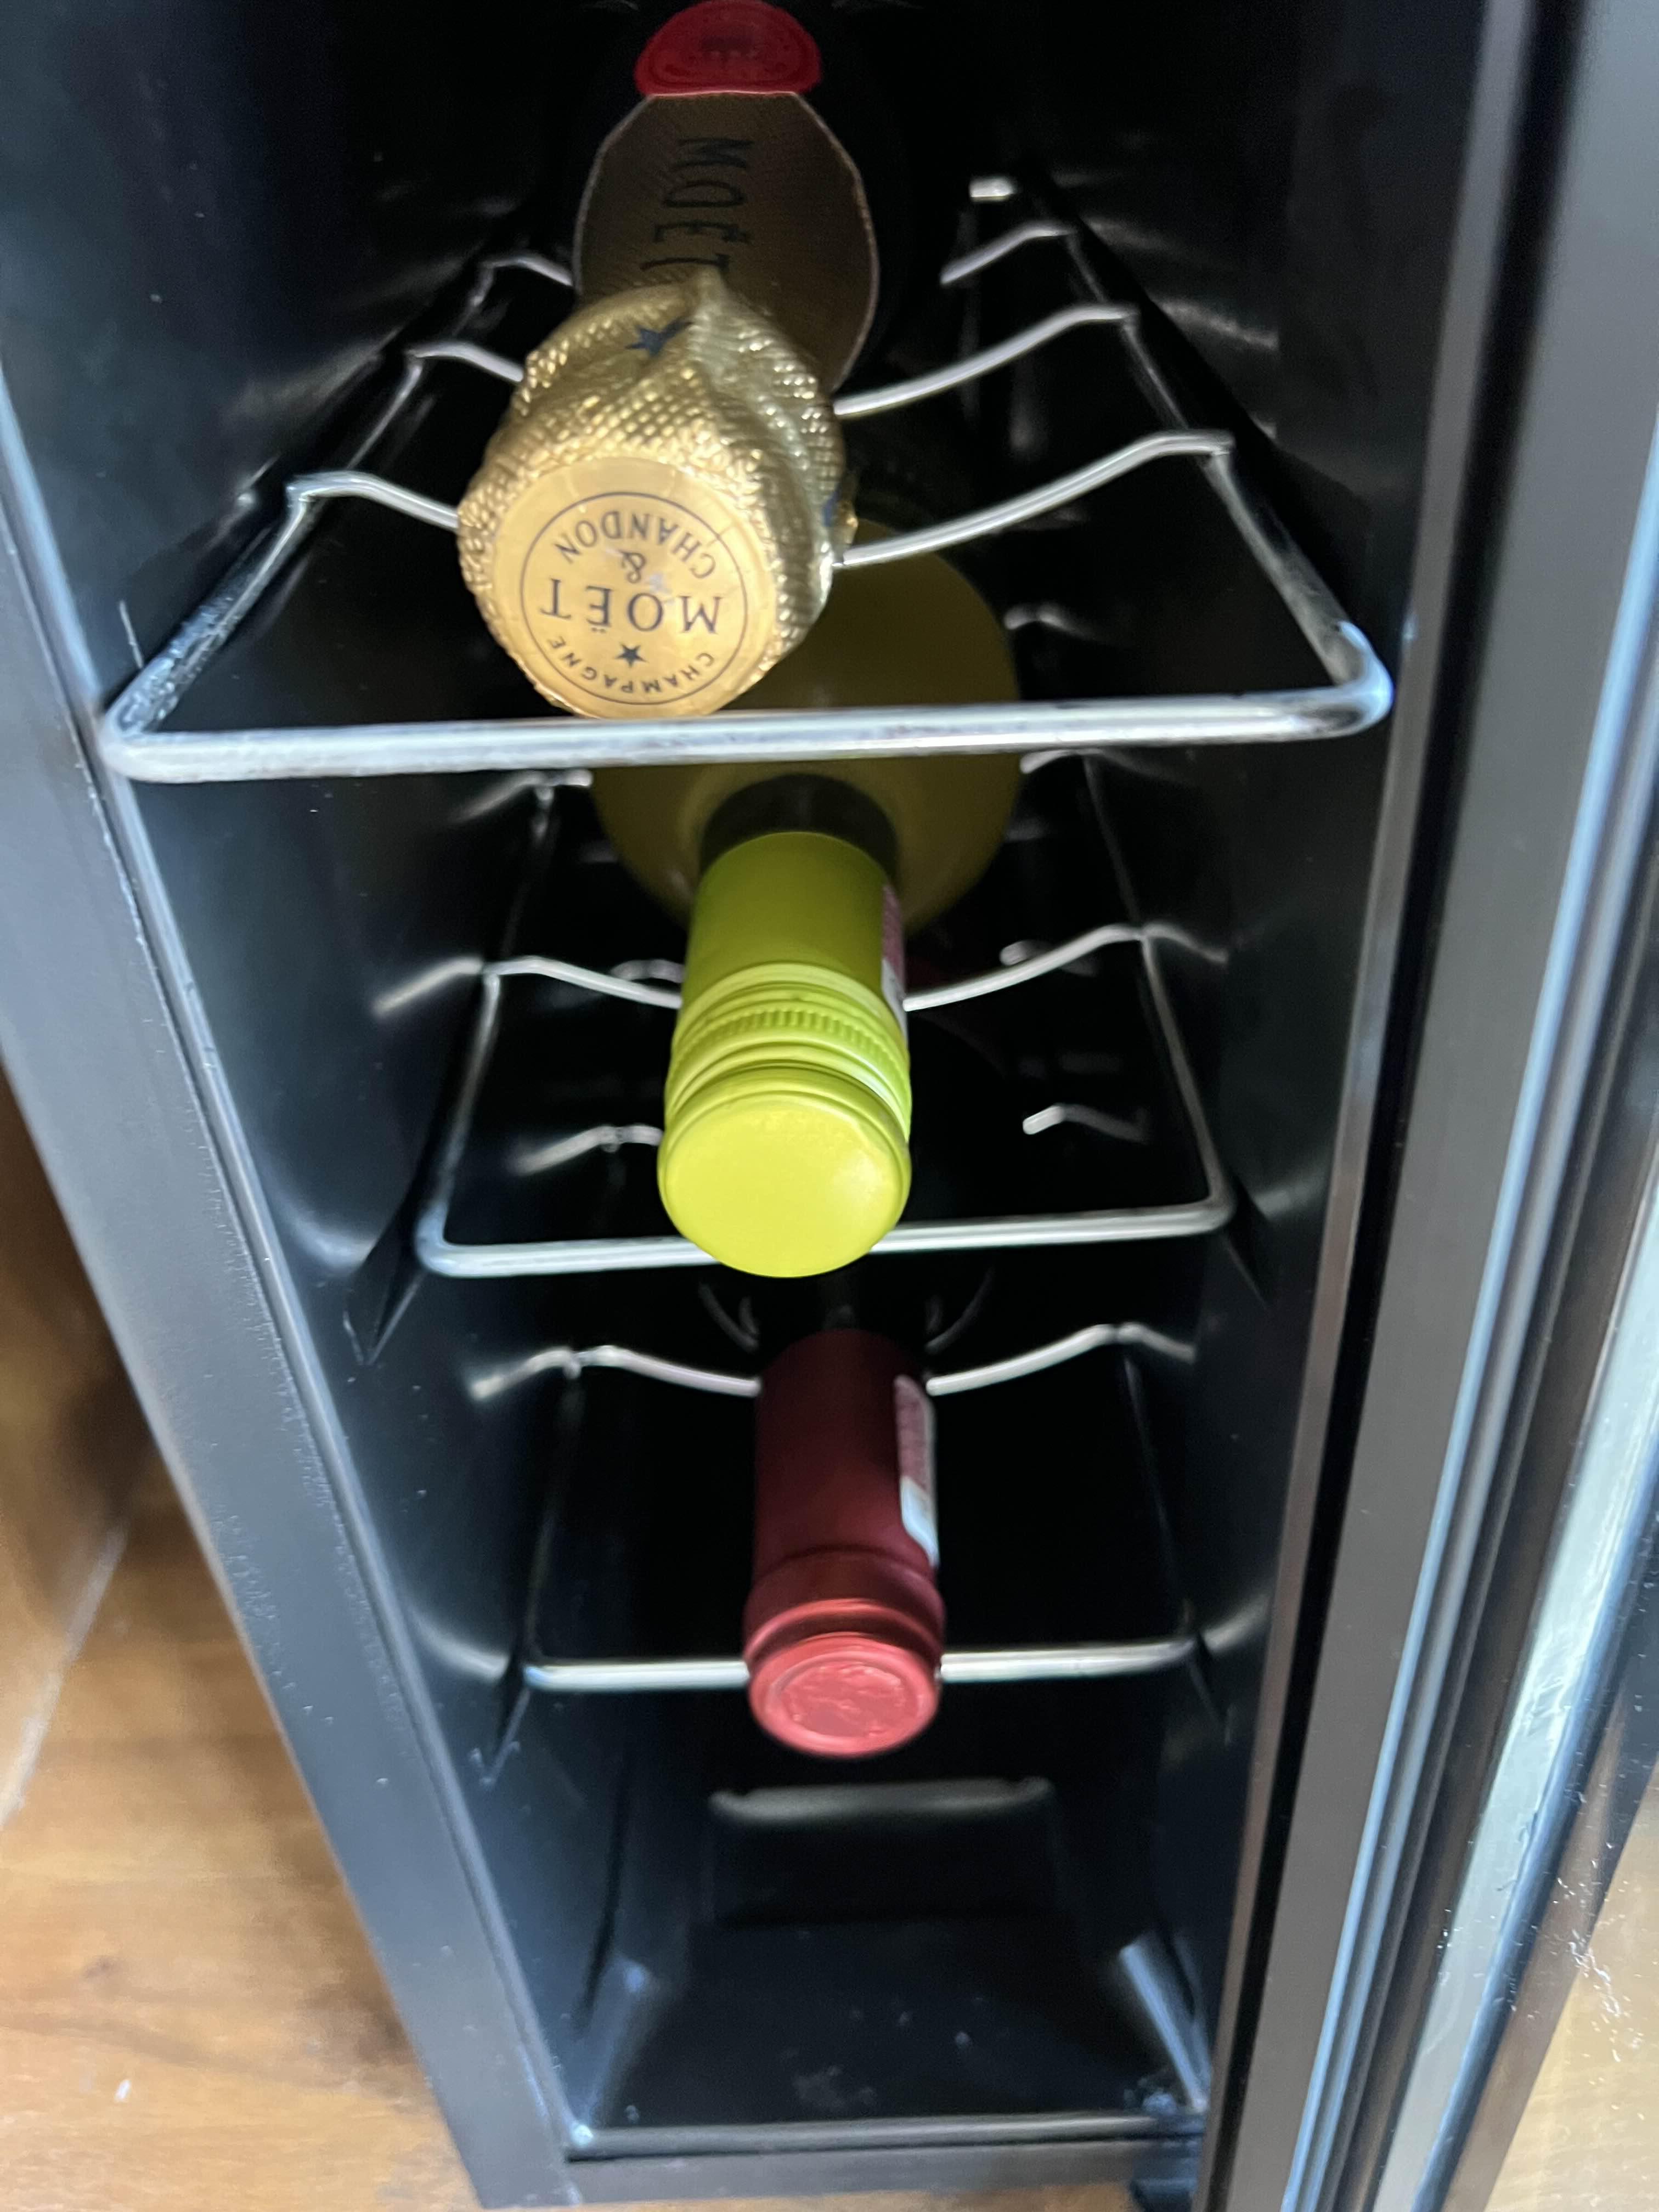 와인 냉장고 안에 담긴 와인들